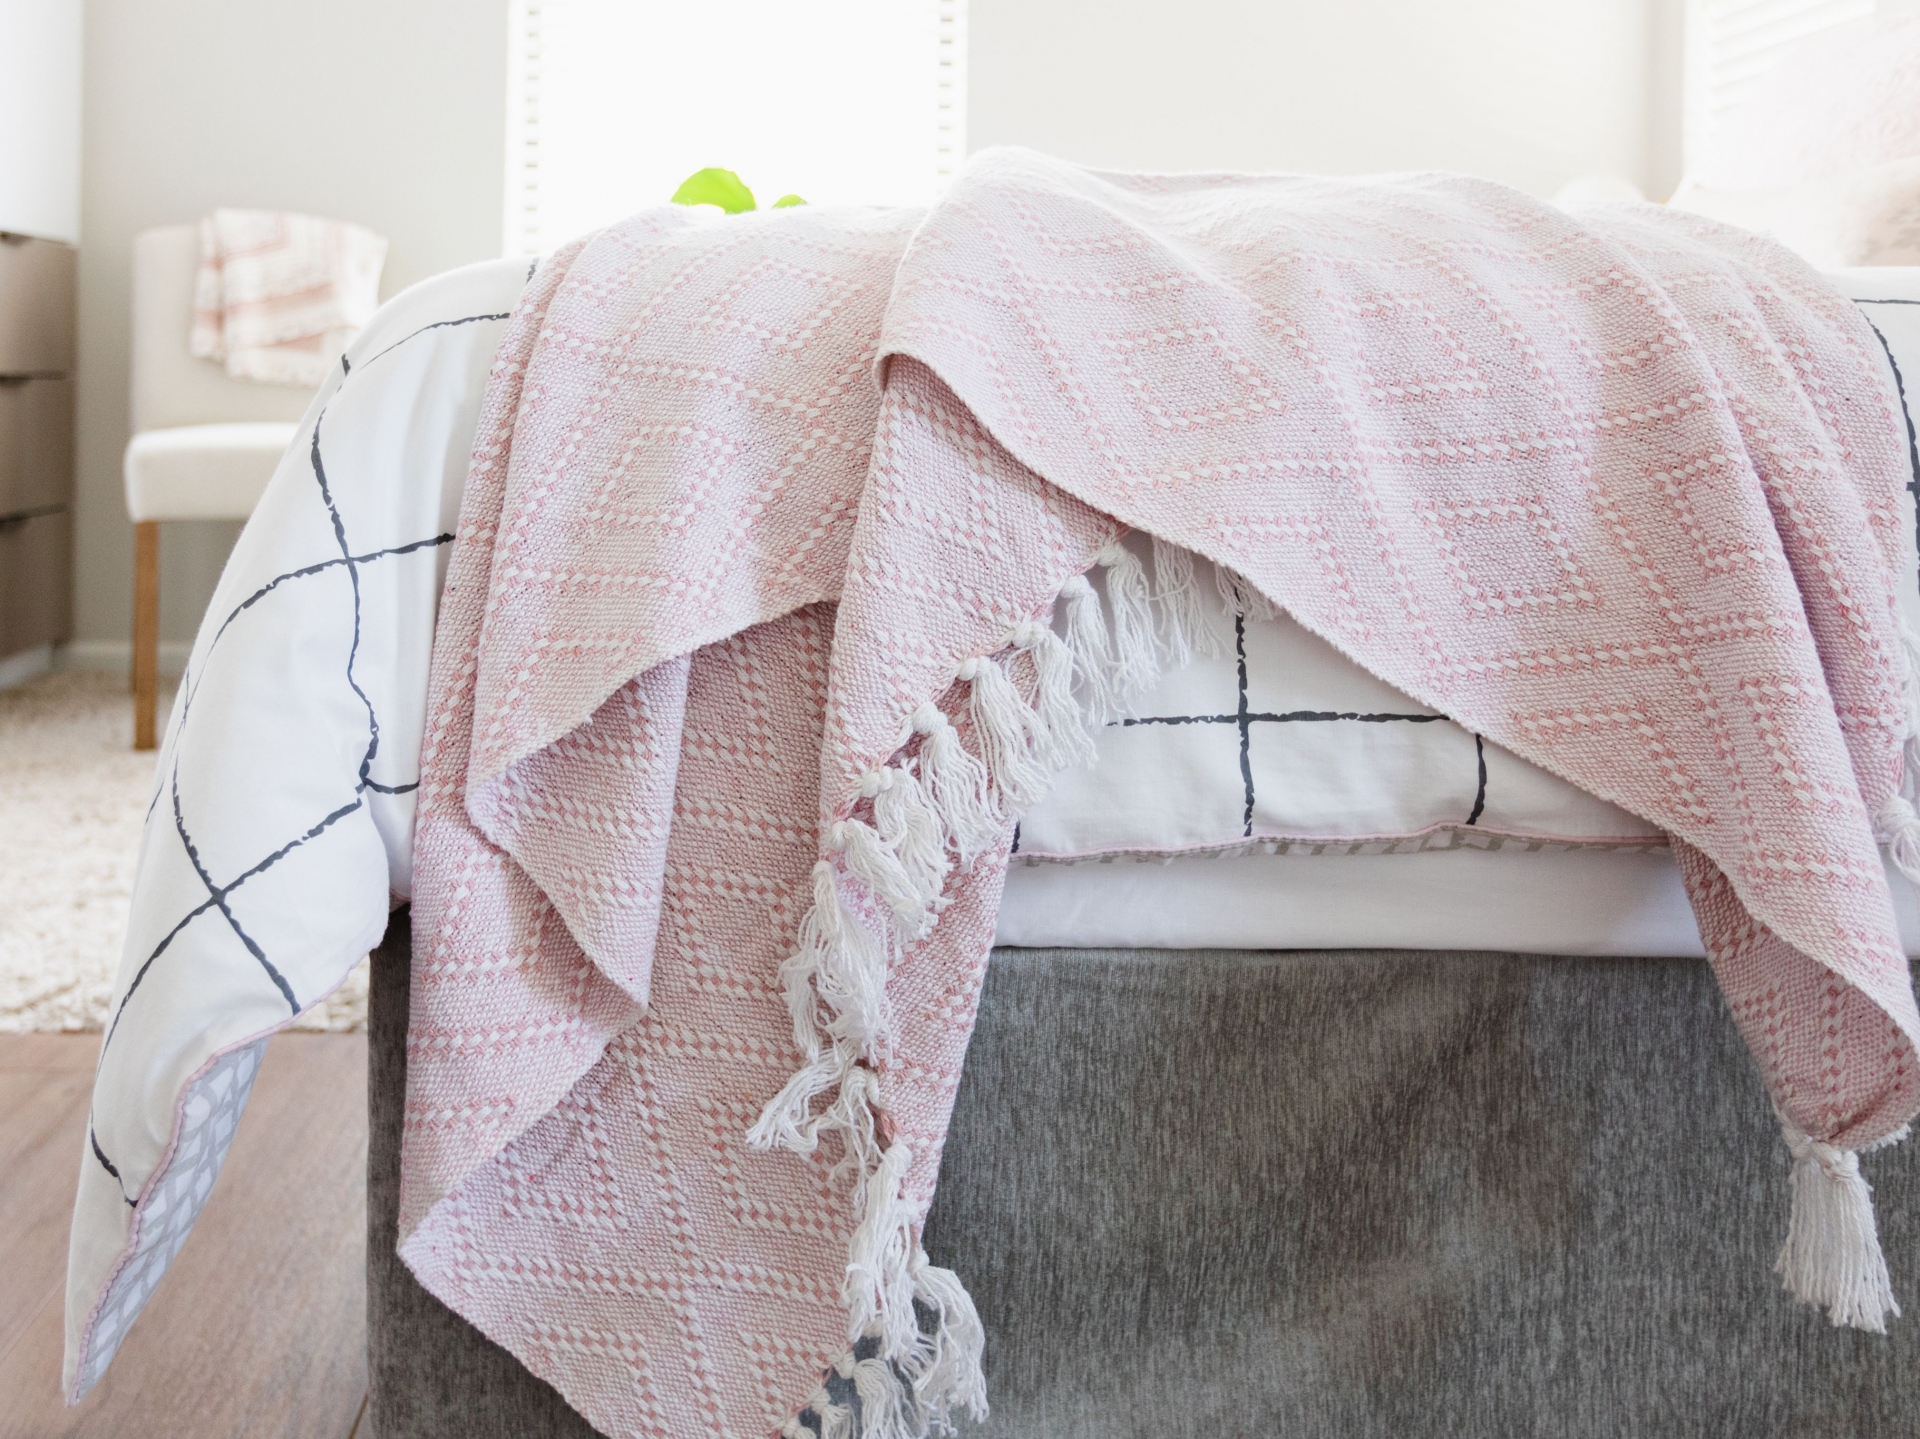 Tấm chăn mỏng nhẹ, sắc màu tươi sáng sẽ giúp phòng ngủ ấm áp hơn bằng thị giác.